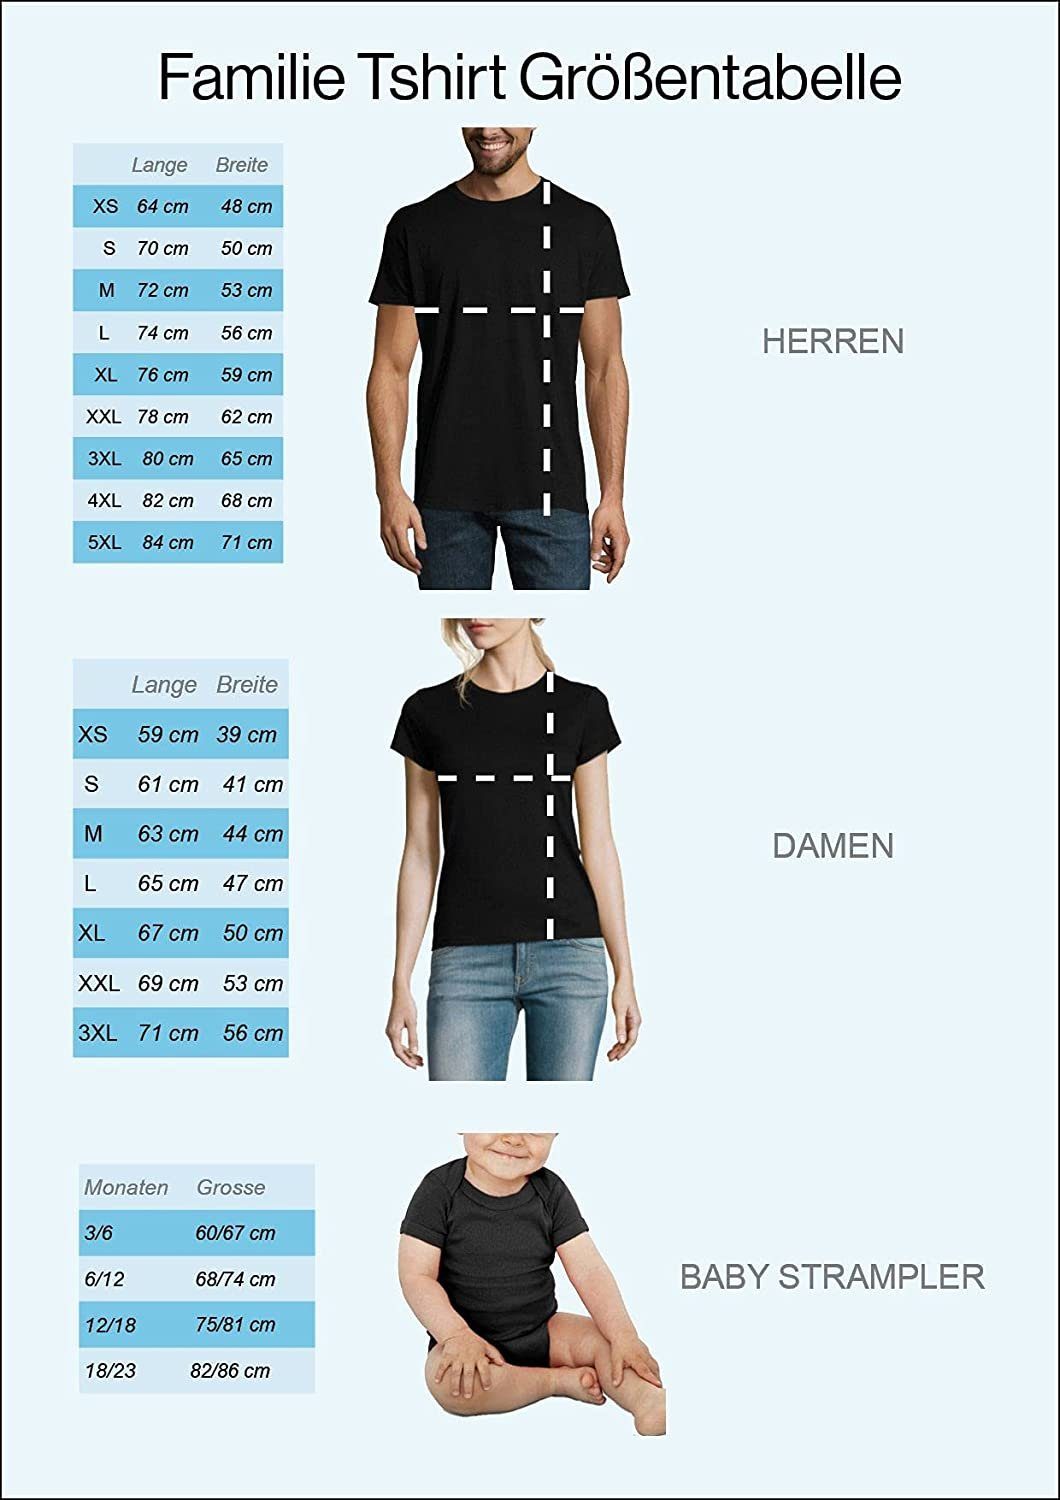 Papa tollem Damen T-Shirt Schwarz Set / in Design, Strampler Baby Bear Herren Bear Baby Baby Strampler Frontprint mit Designz Youth Mama